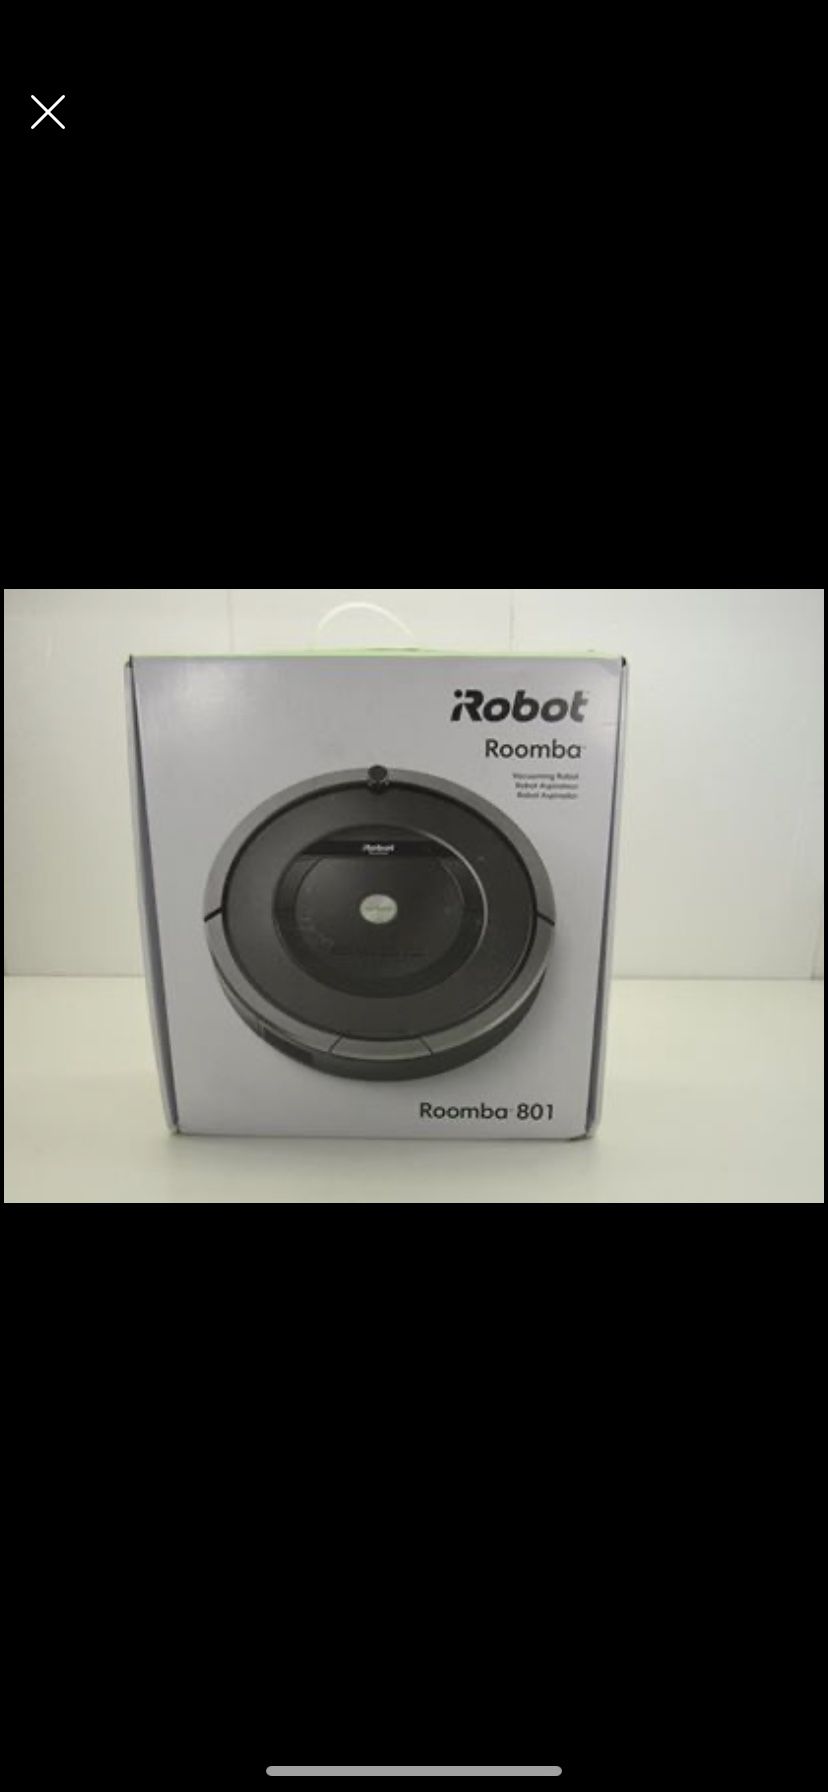 iRobot roomba 801 robot vacuum